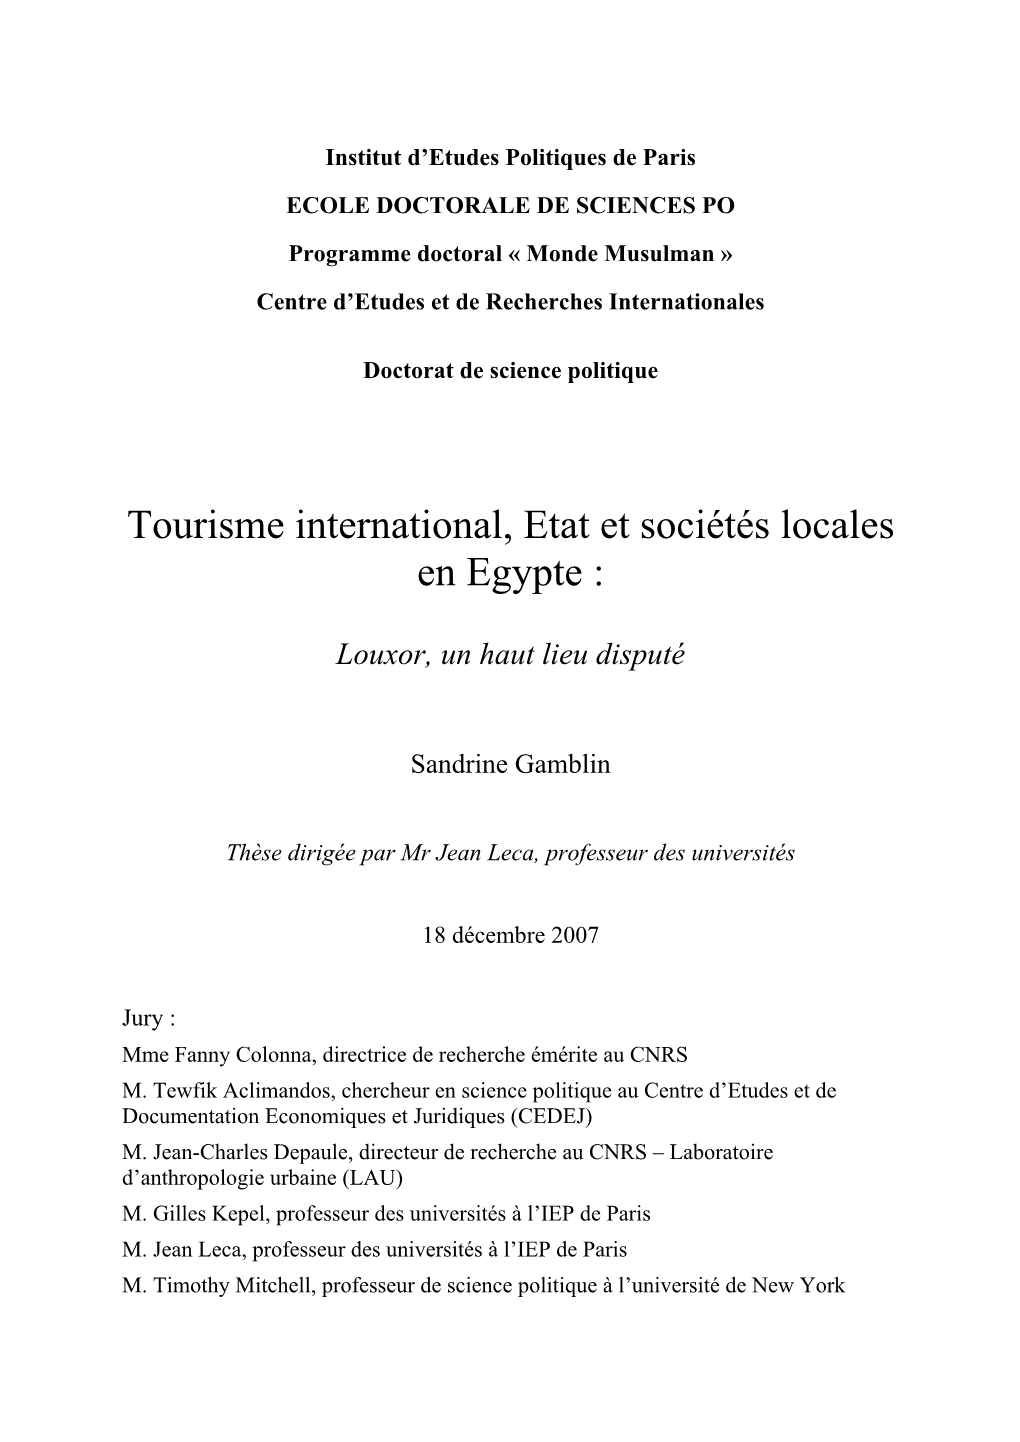 Tourisme International, Etat Et Sociétés Locales En Egypte